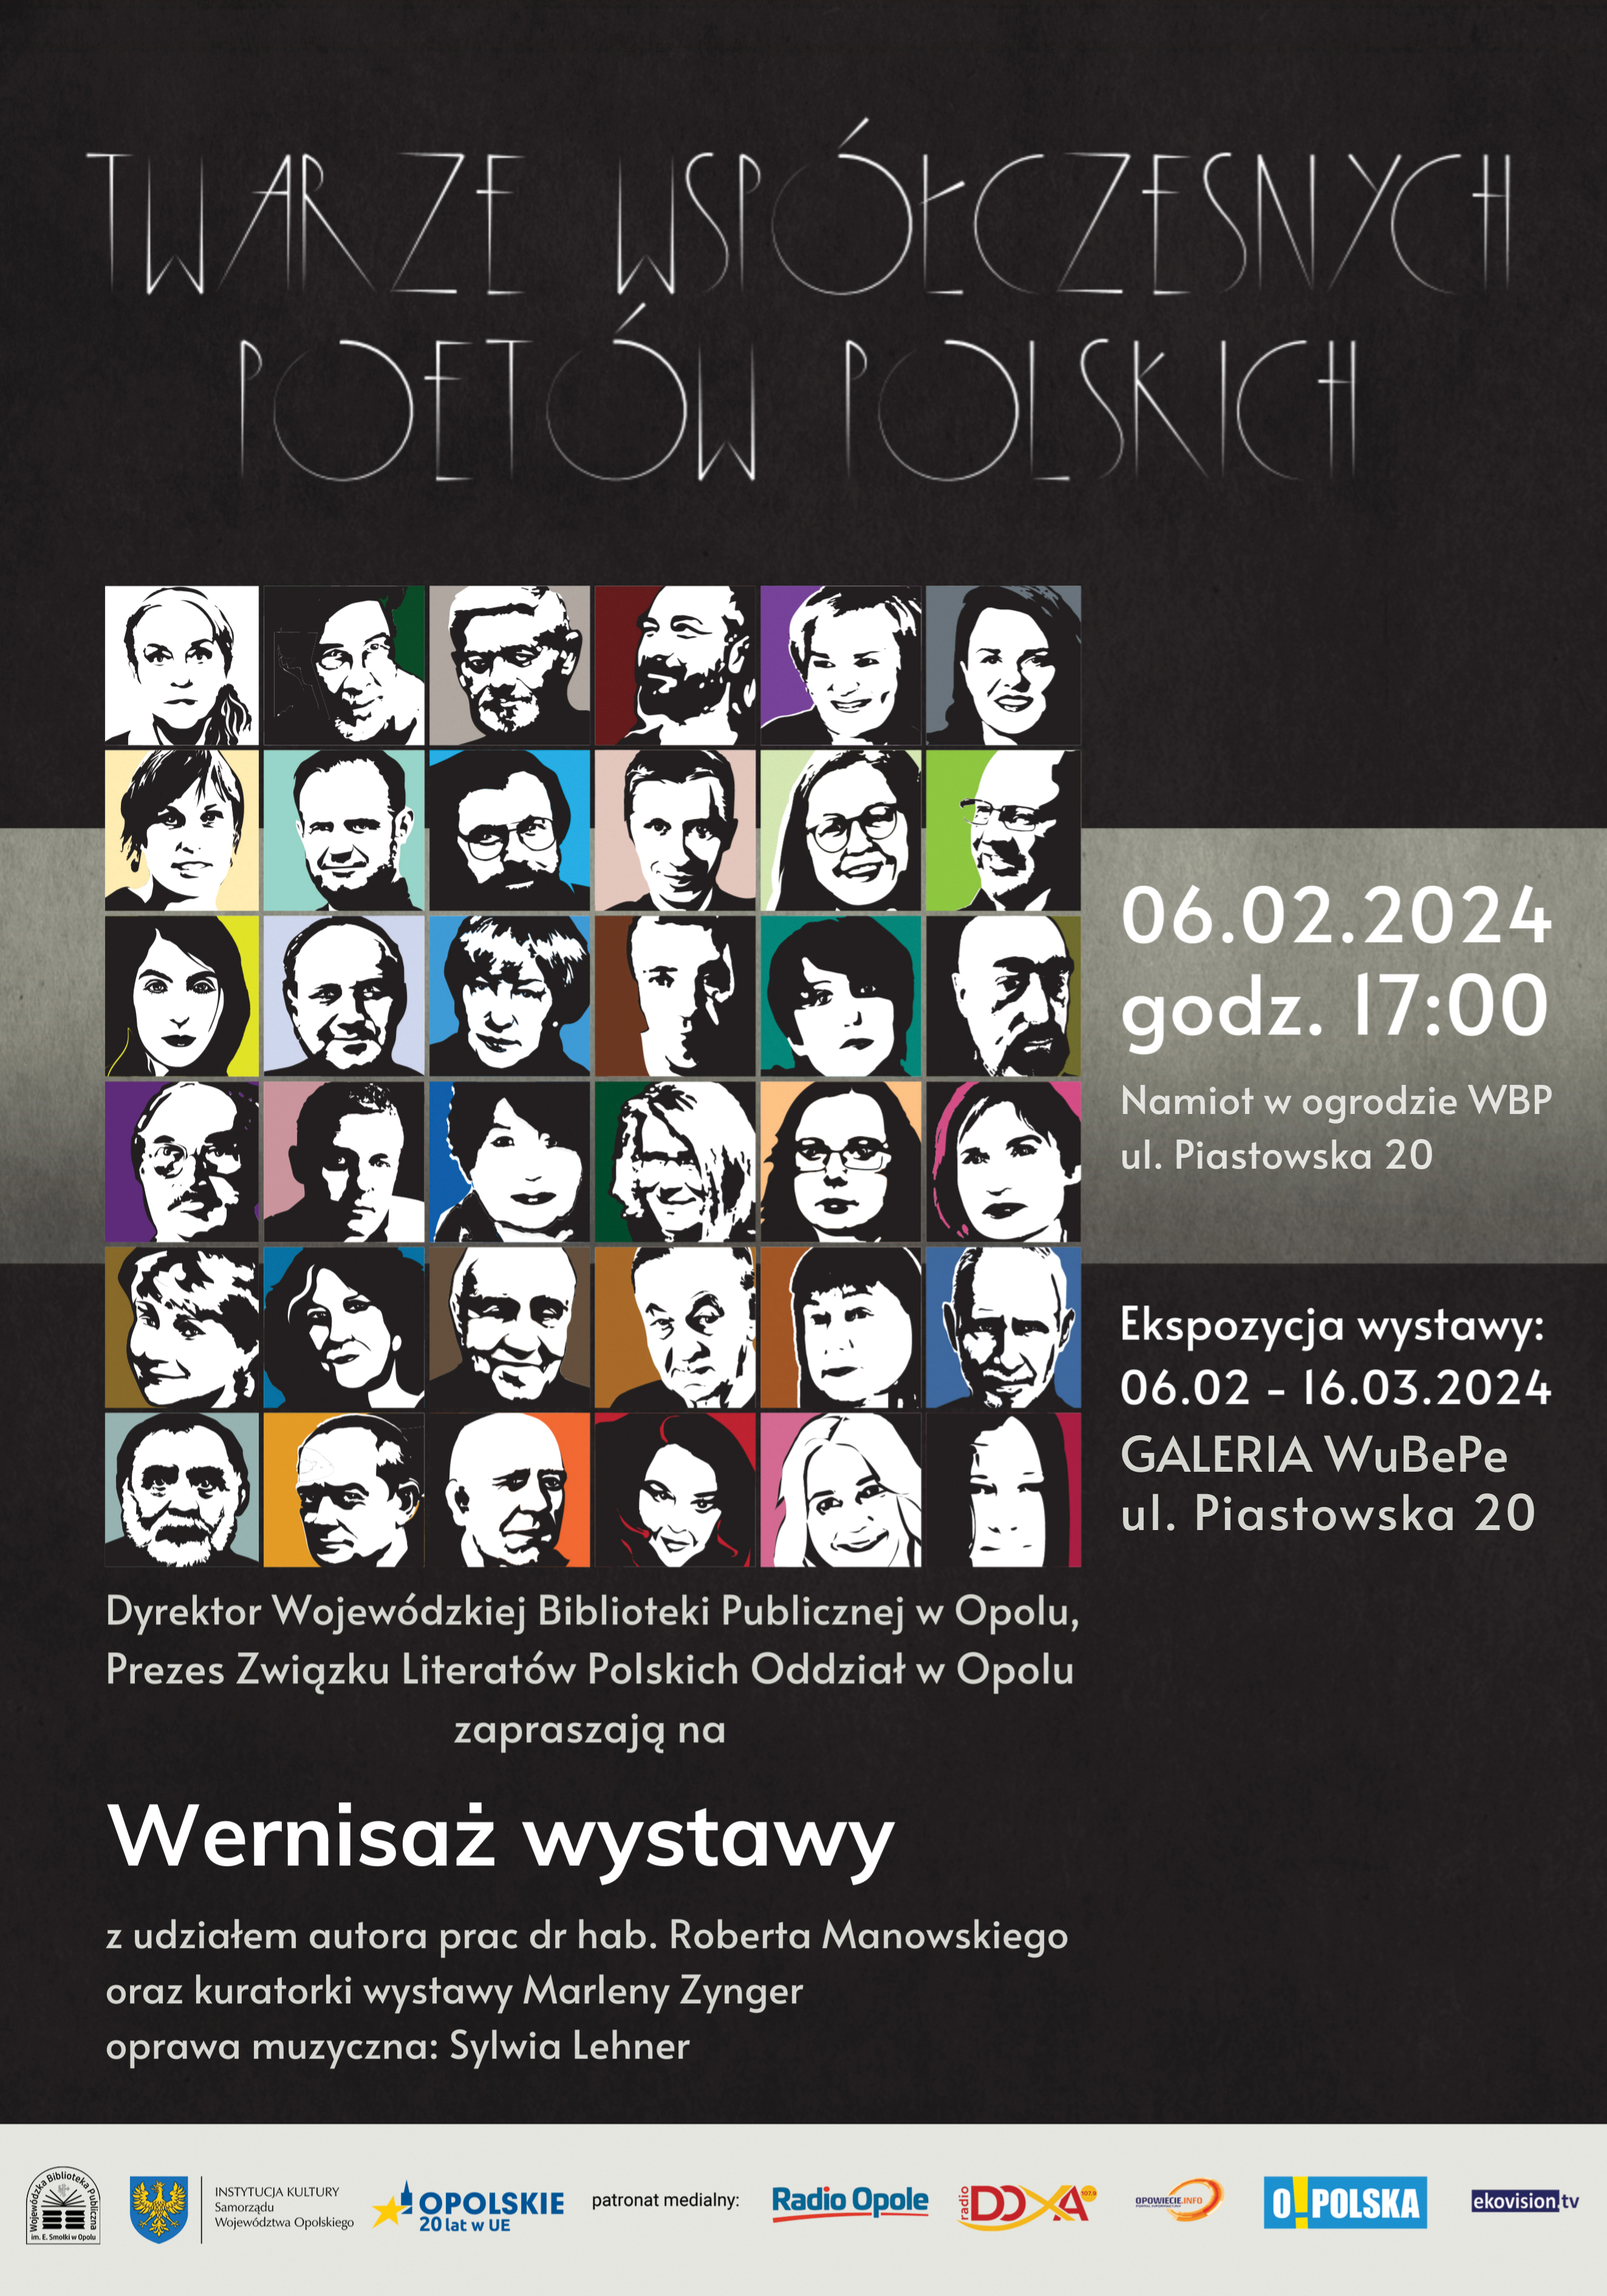 Wystawa „Twarze współczesnych poetów polskich” od wtorku w WBP